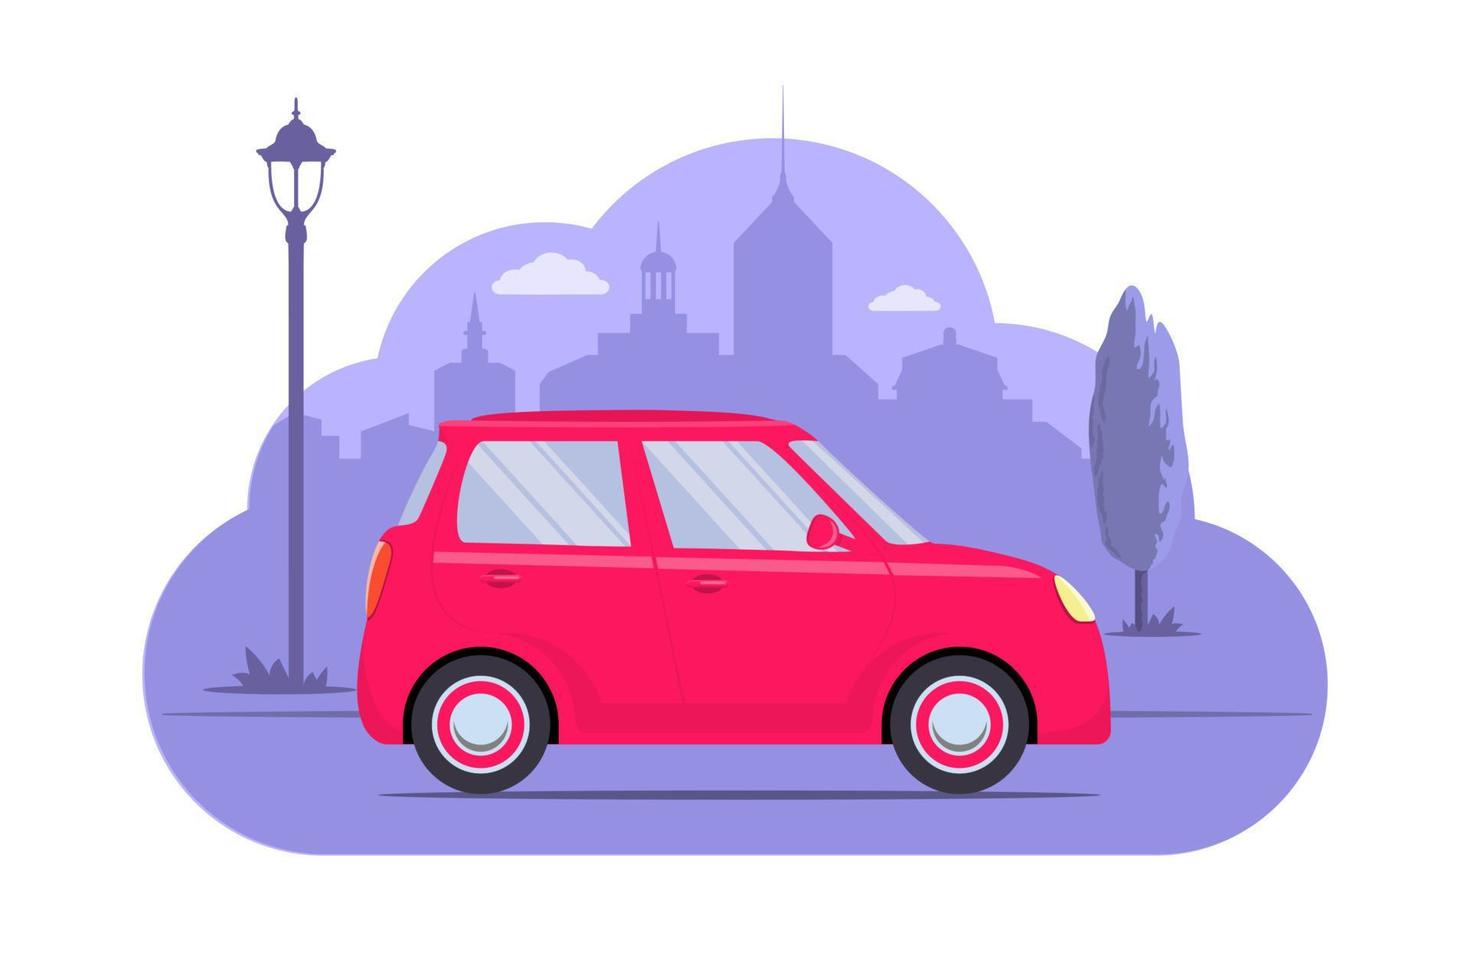 coche lindo en el fondo de la silueta de la ciudad. coche rosa sobre fondo monocromático púrpura. ilustración de concepto de coche para aplicación o sitio web. transporte moderno. ilustración vectorial de estilo plano. vector